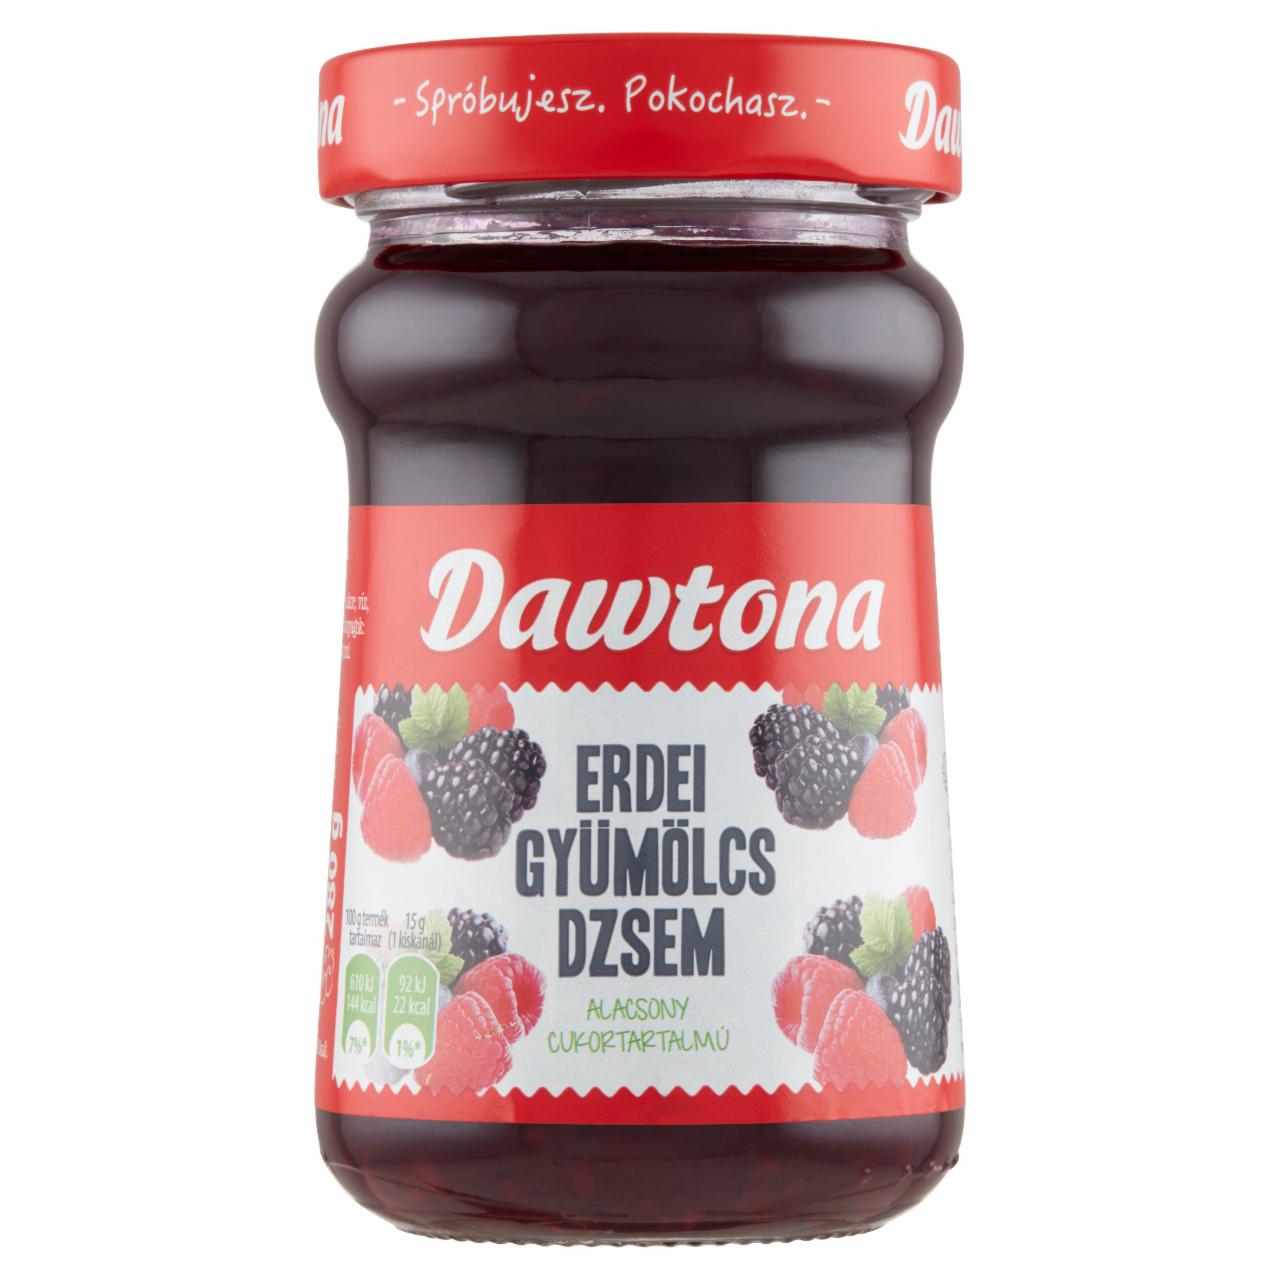 Képek - Dawtona alacsony cukortartalmú erdei gyümölcs dzsem 280 g